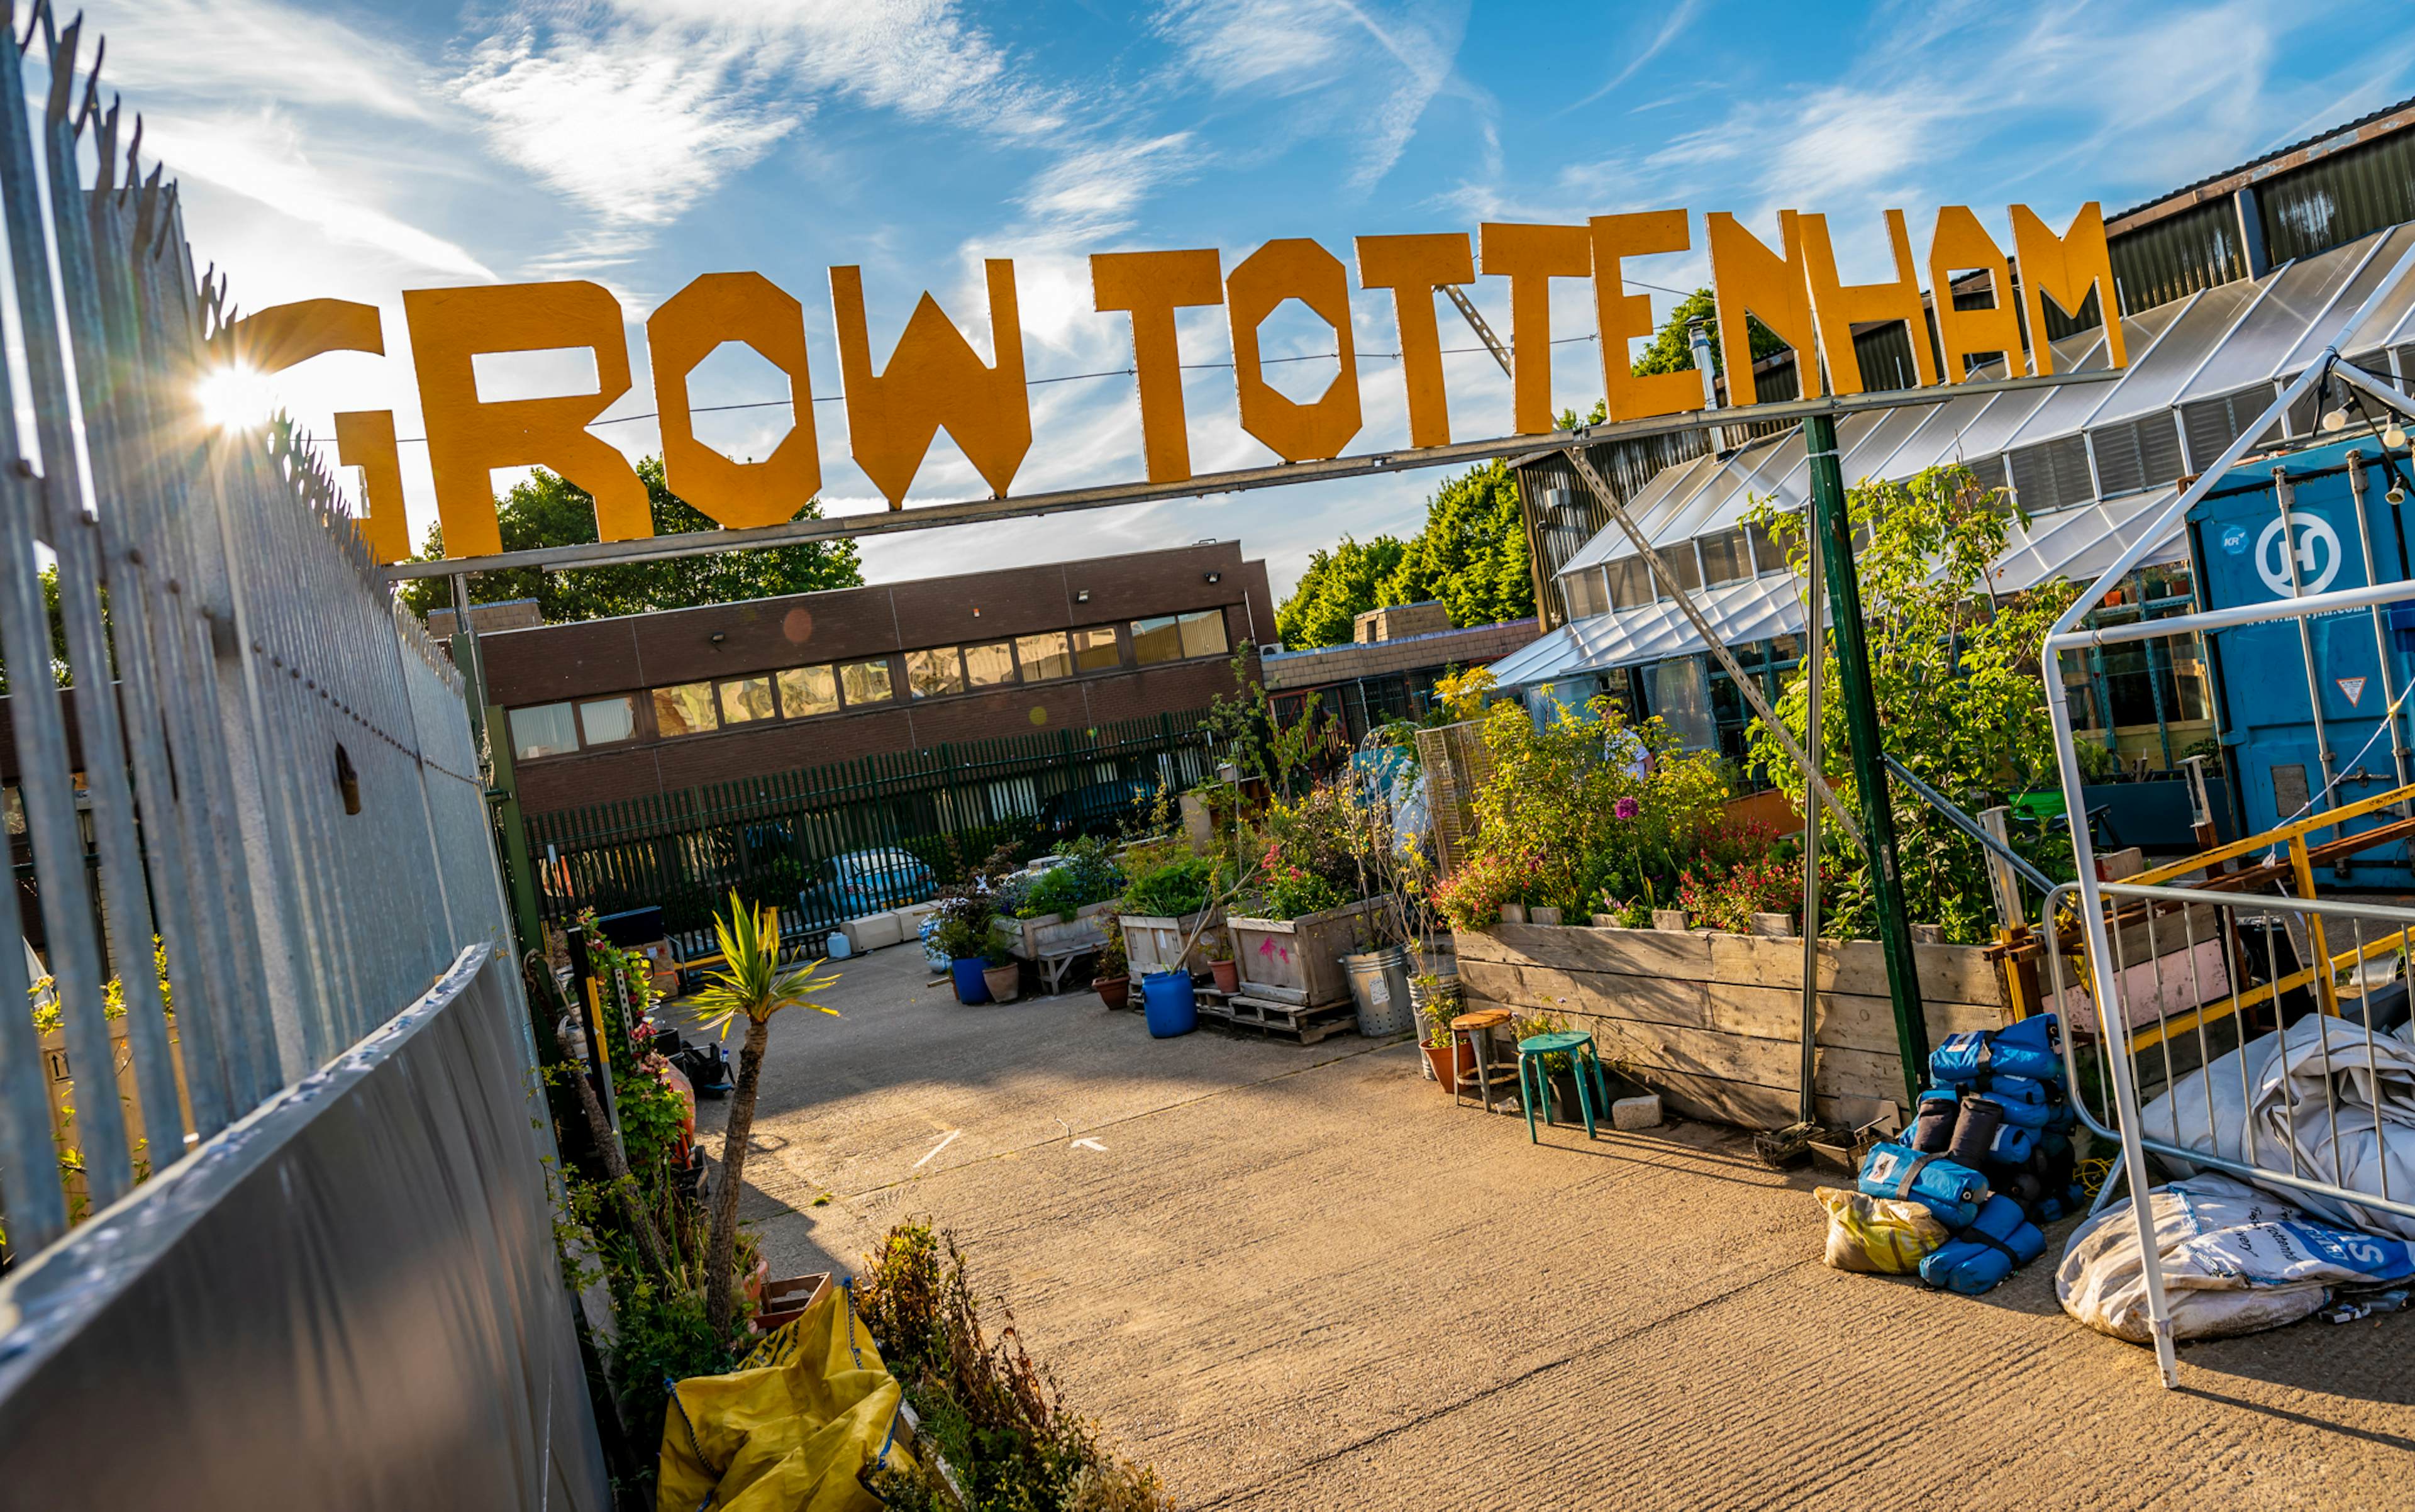 GROW Tottenham - Garden dancefloor  image 1